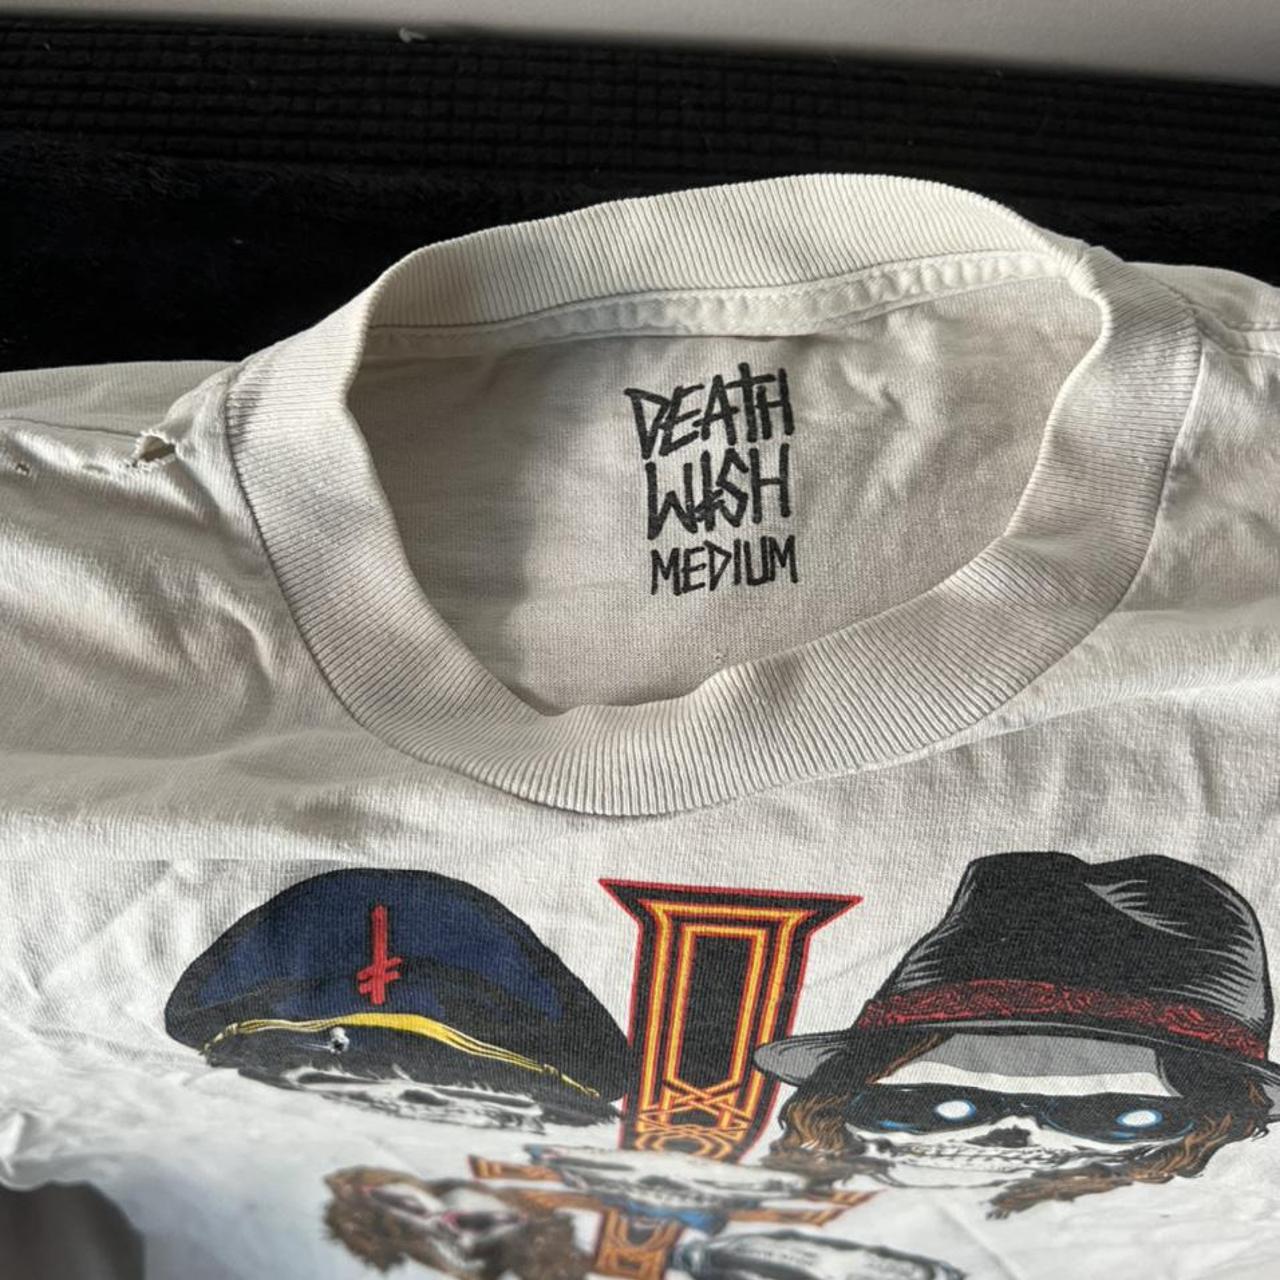 Product Image 3 - Deathwish skateboards used t shirt,